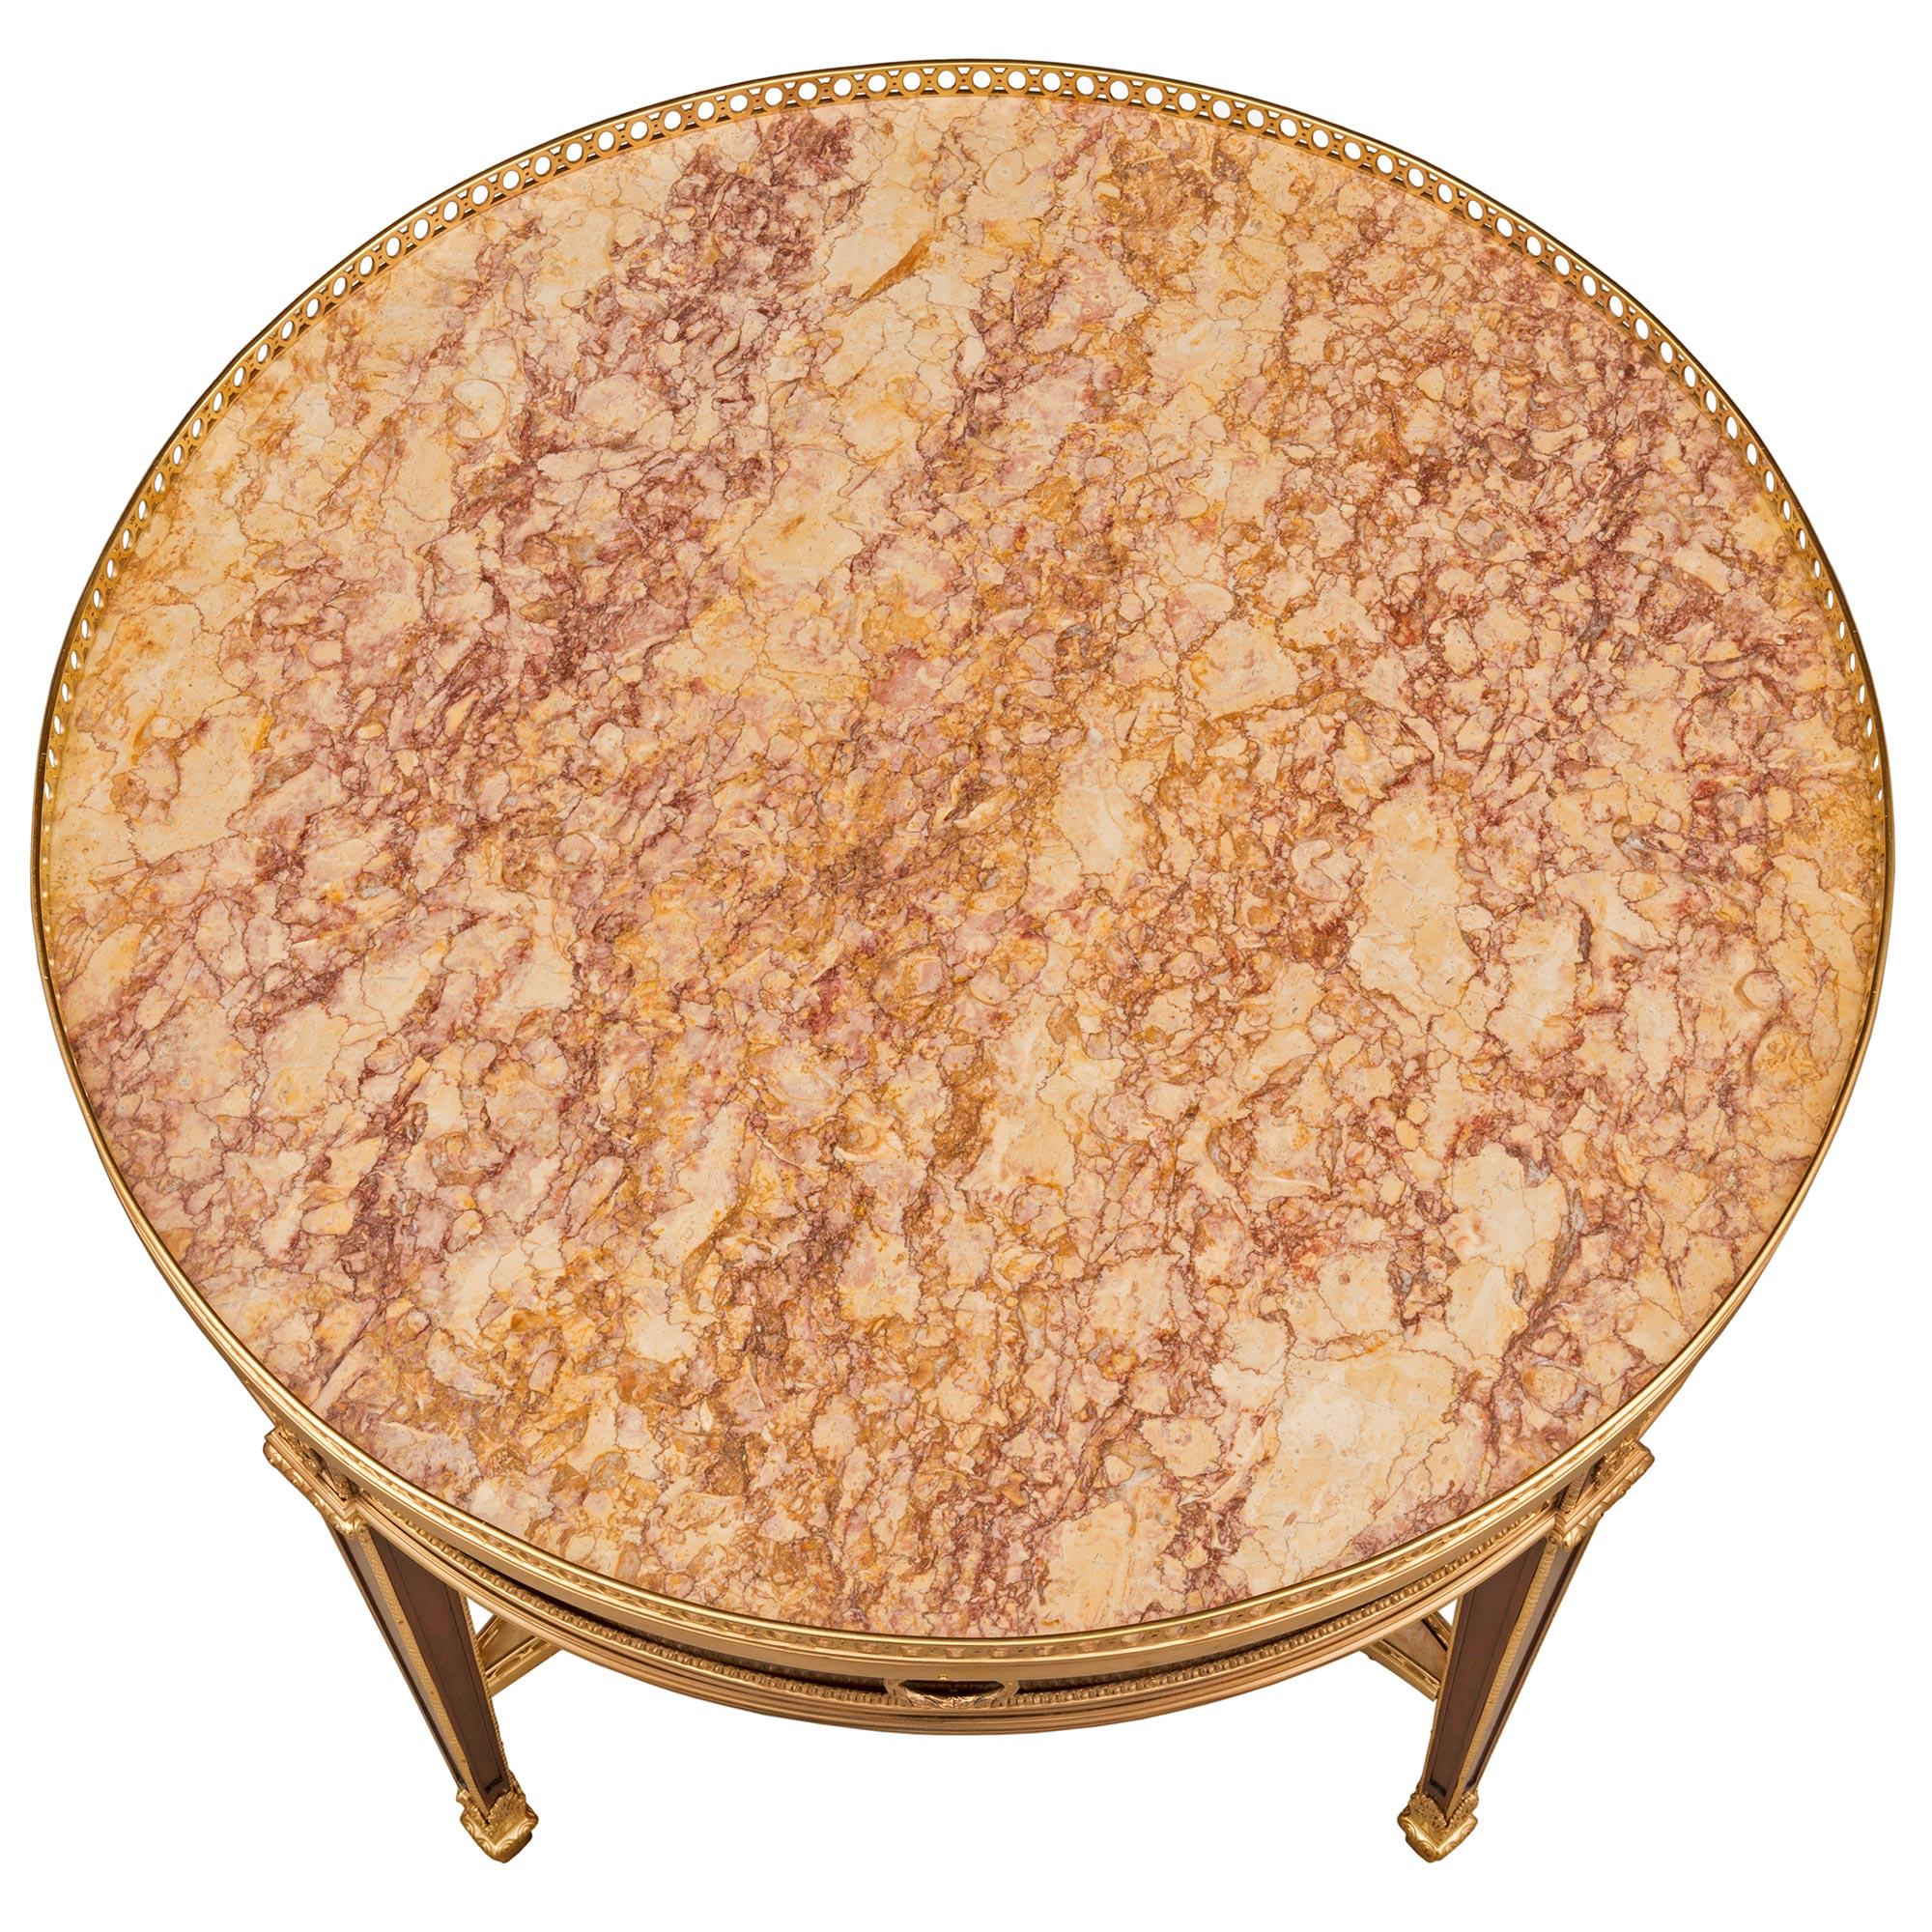 Superbe table d'appoint de style Louis XVI du XIXe siècle en acajou, bronze doré et marbre Brocatelle d'Espagne, signée Durand. La table circulaire est surélevée par des pieds coniques carrés des plus élégants, avec des sabots feuillus ajustés